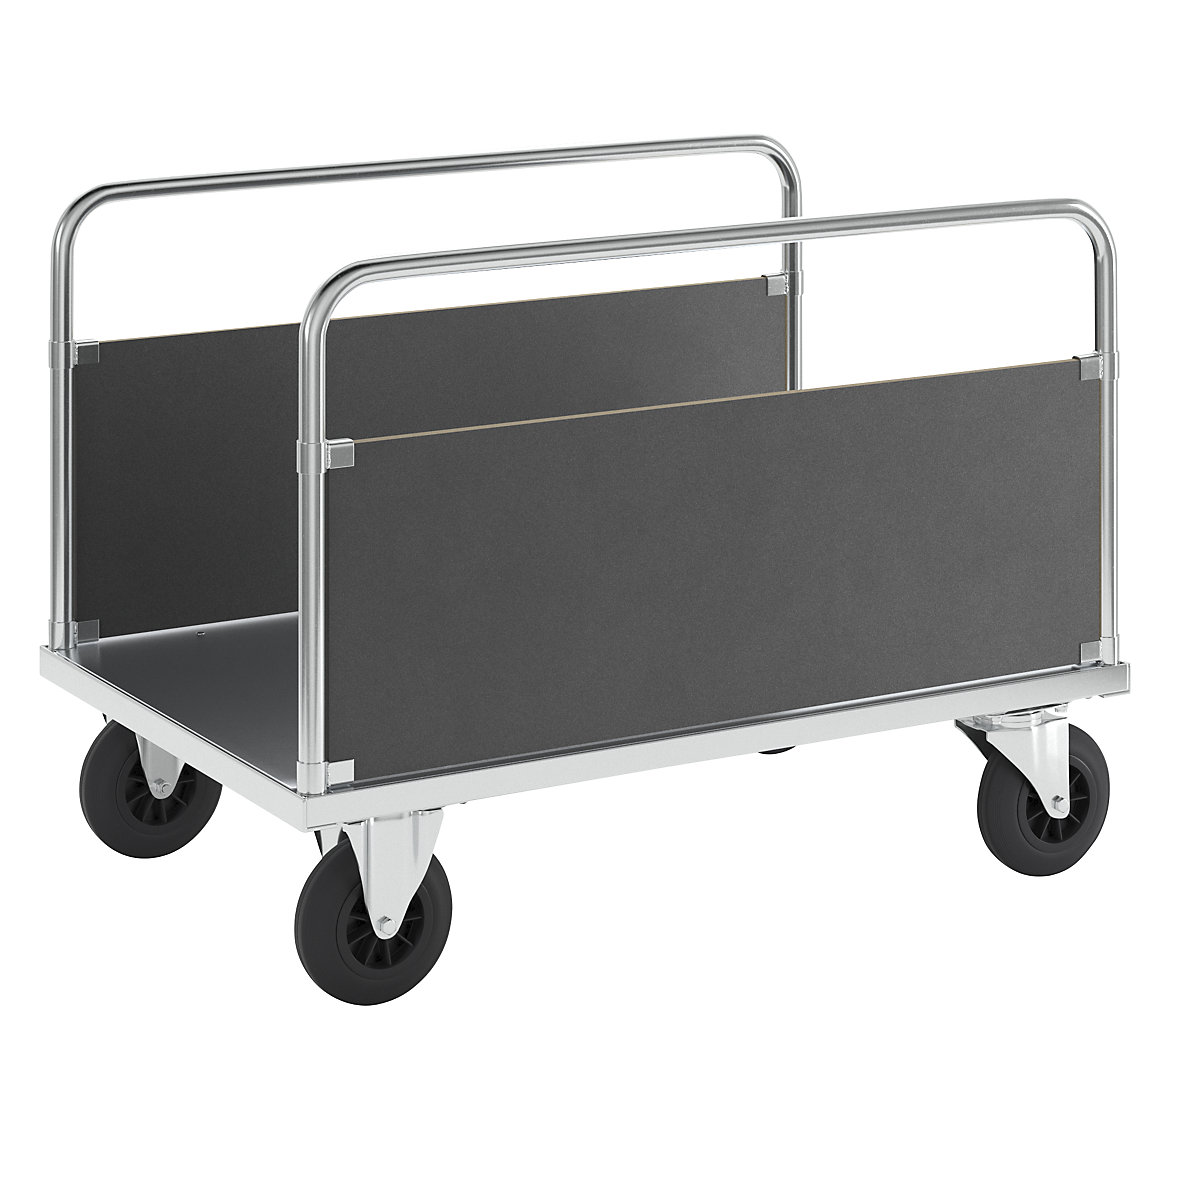 Ploski voziček, nosilnost 500 kg – Kongamek, 2 stranski steni, DxŠxV 1200 x 800 x 900 mm, brez zavore-8